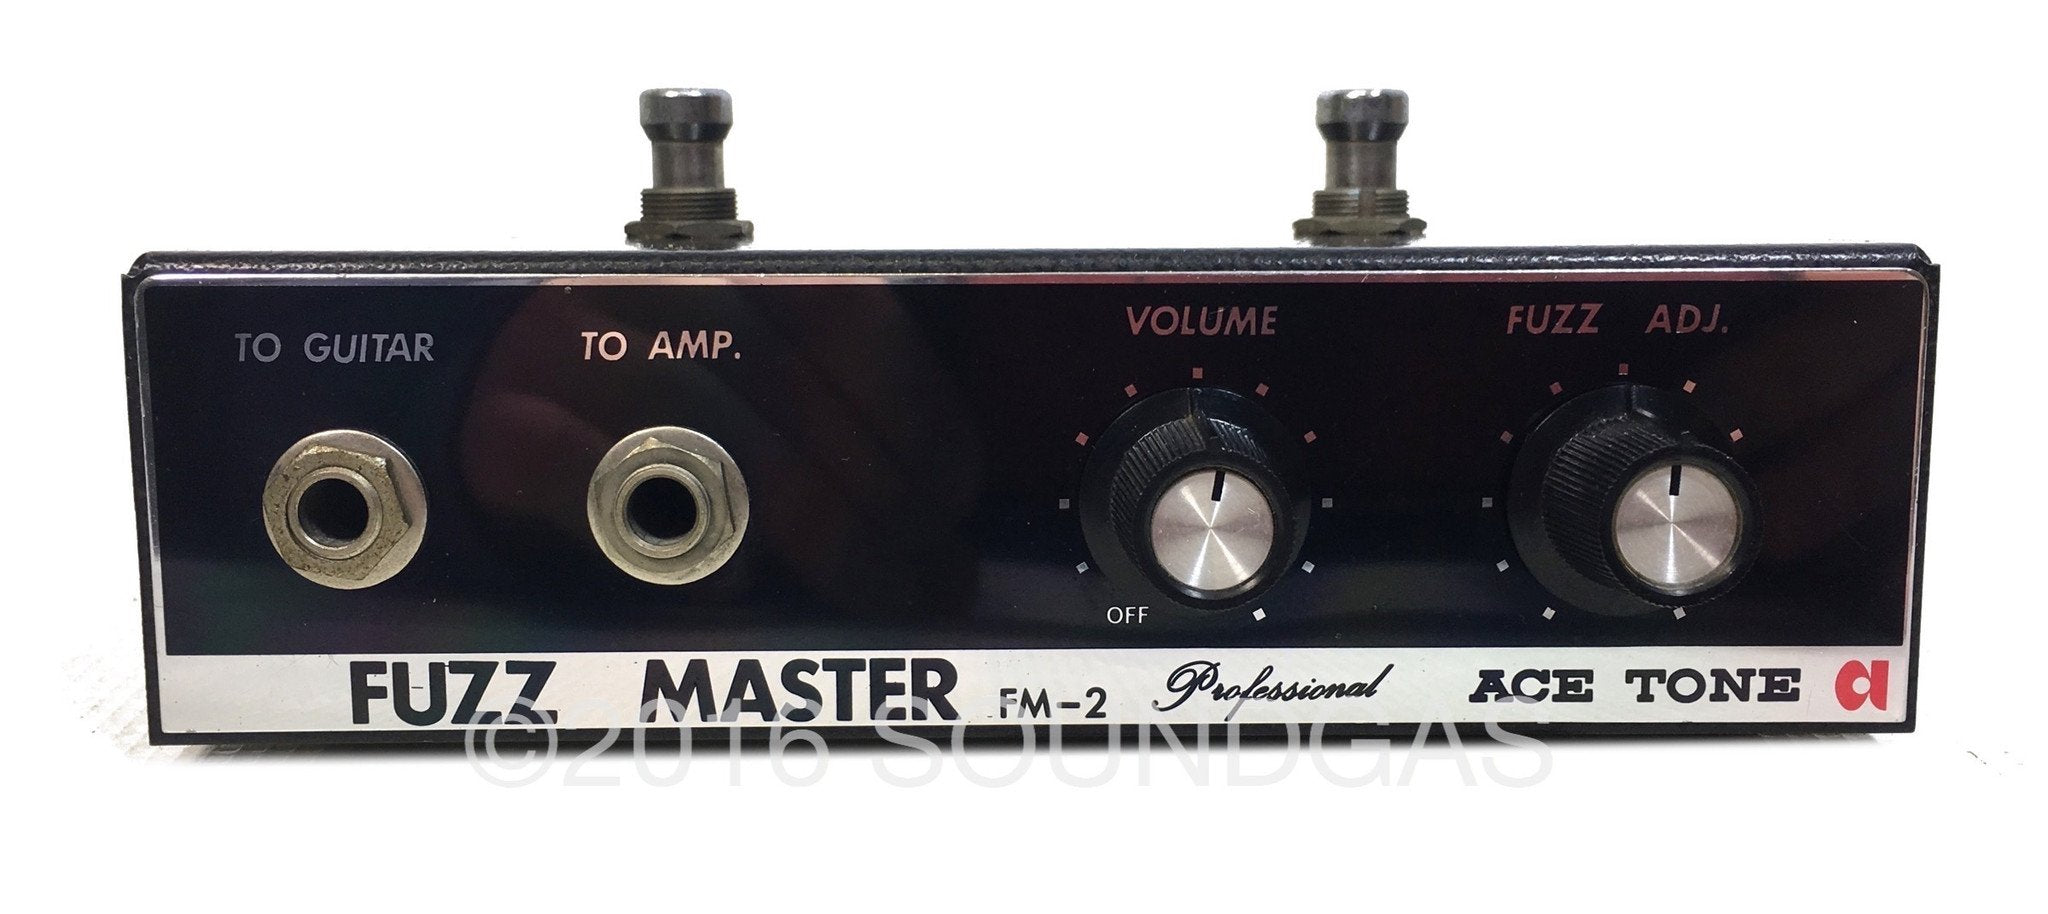 Ace Tone FM-2 Fuzz Master – Soundgas